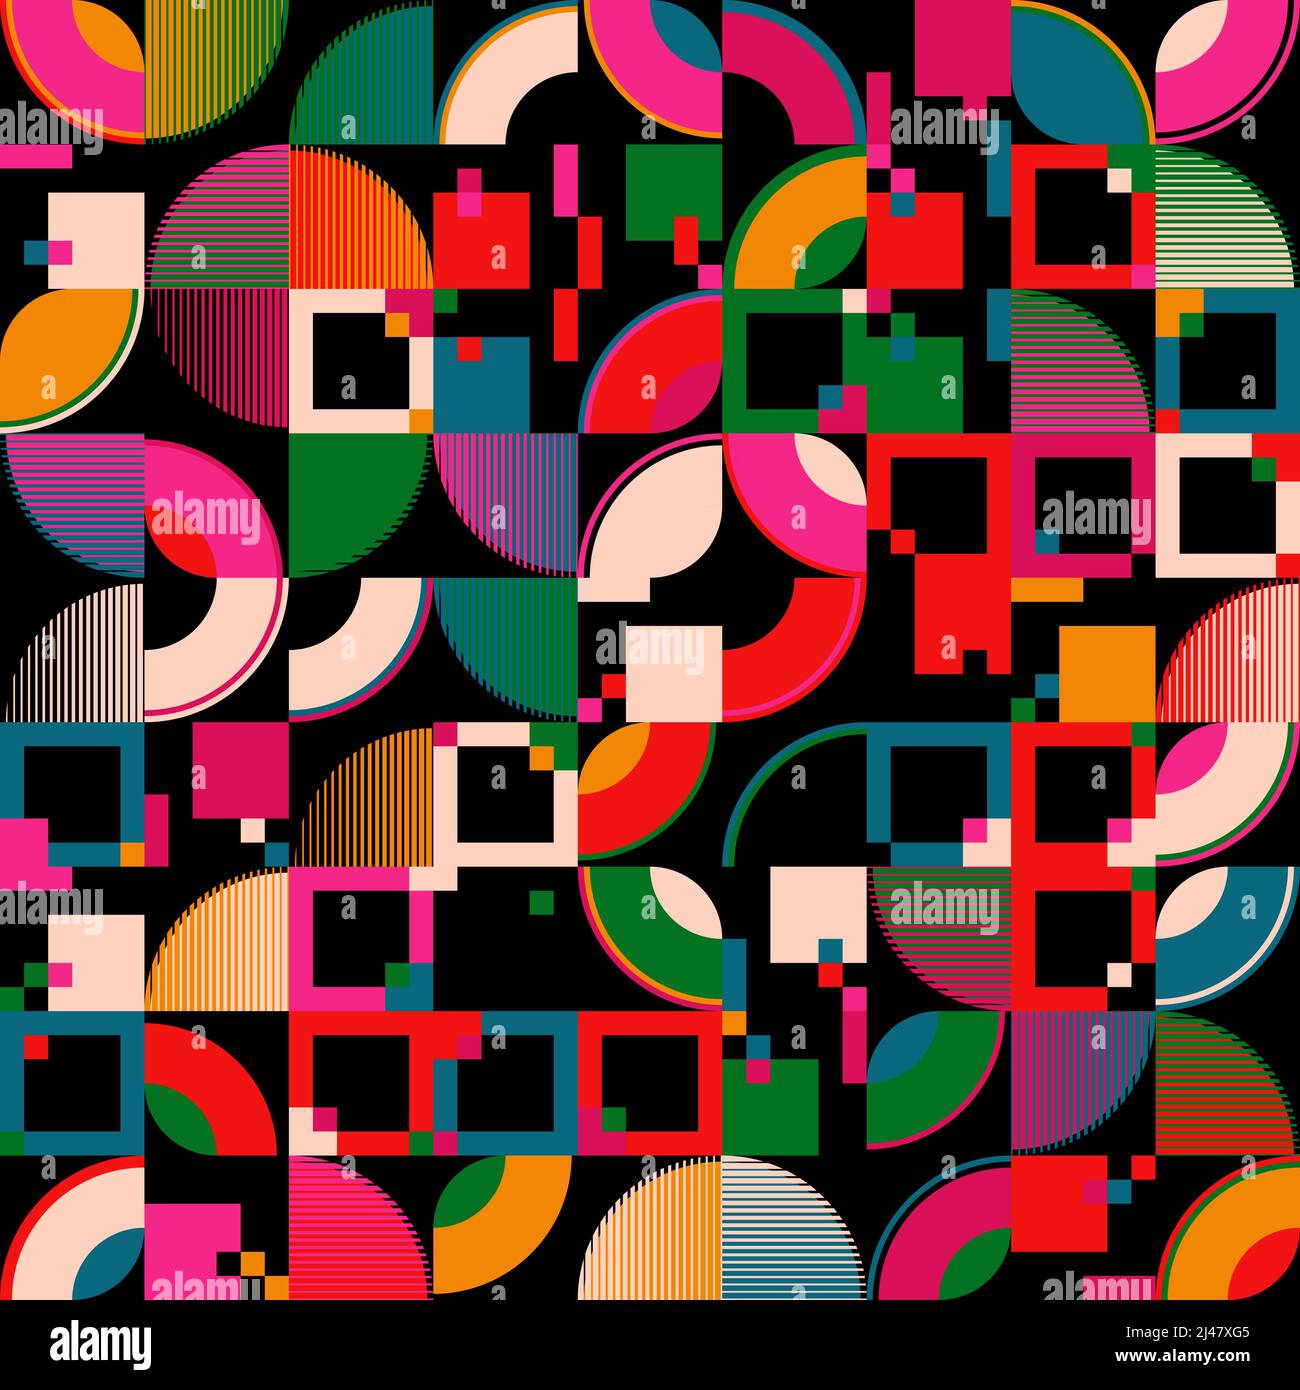 Neonfarbene abstrakte Vektormuster mit verschiedenen geometrischen Formen und Elementen. Digitales Grafikdesign für Poster, Cover, Kunst, Presenta Stock Vektor